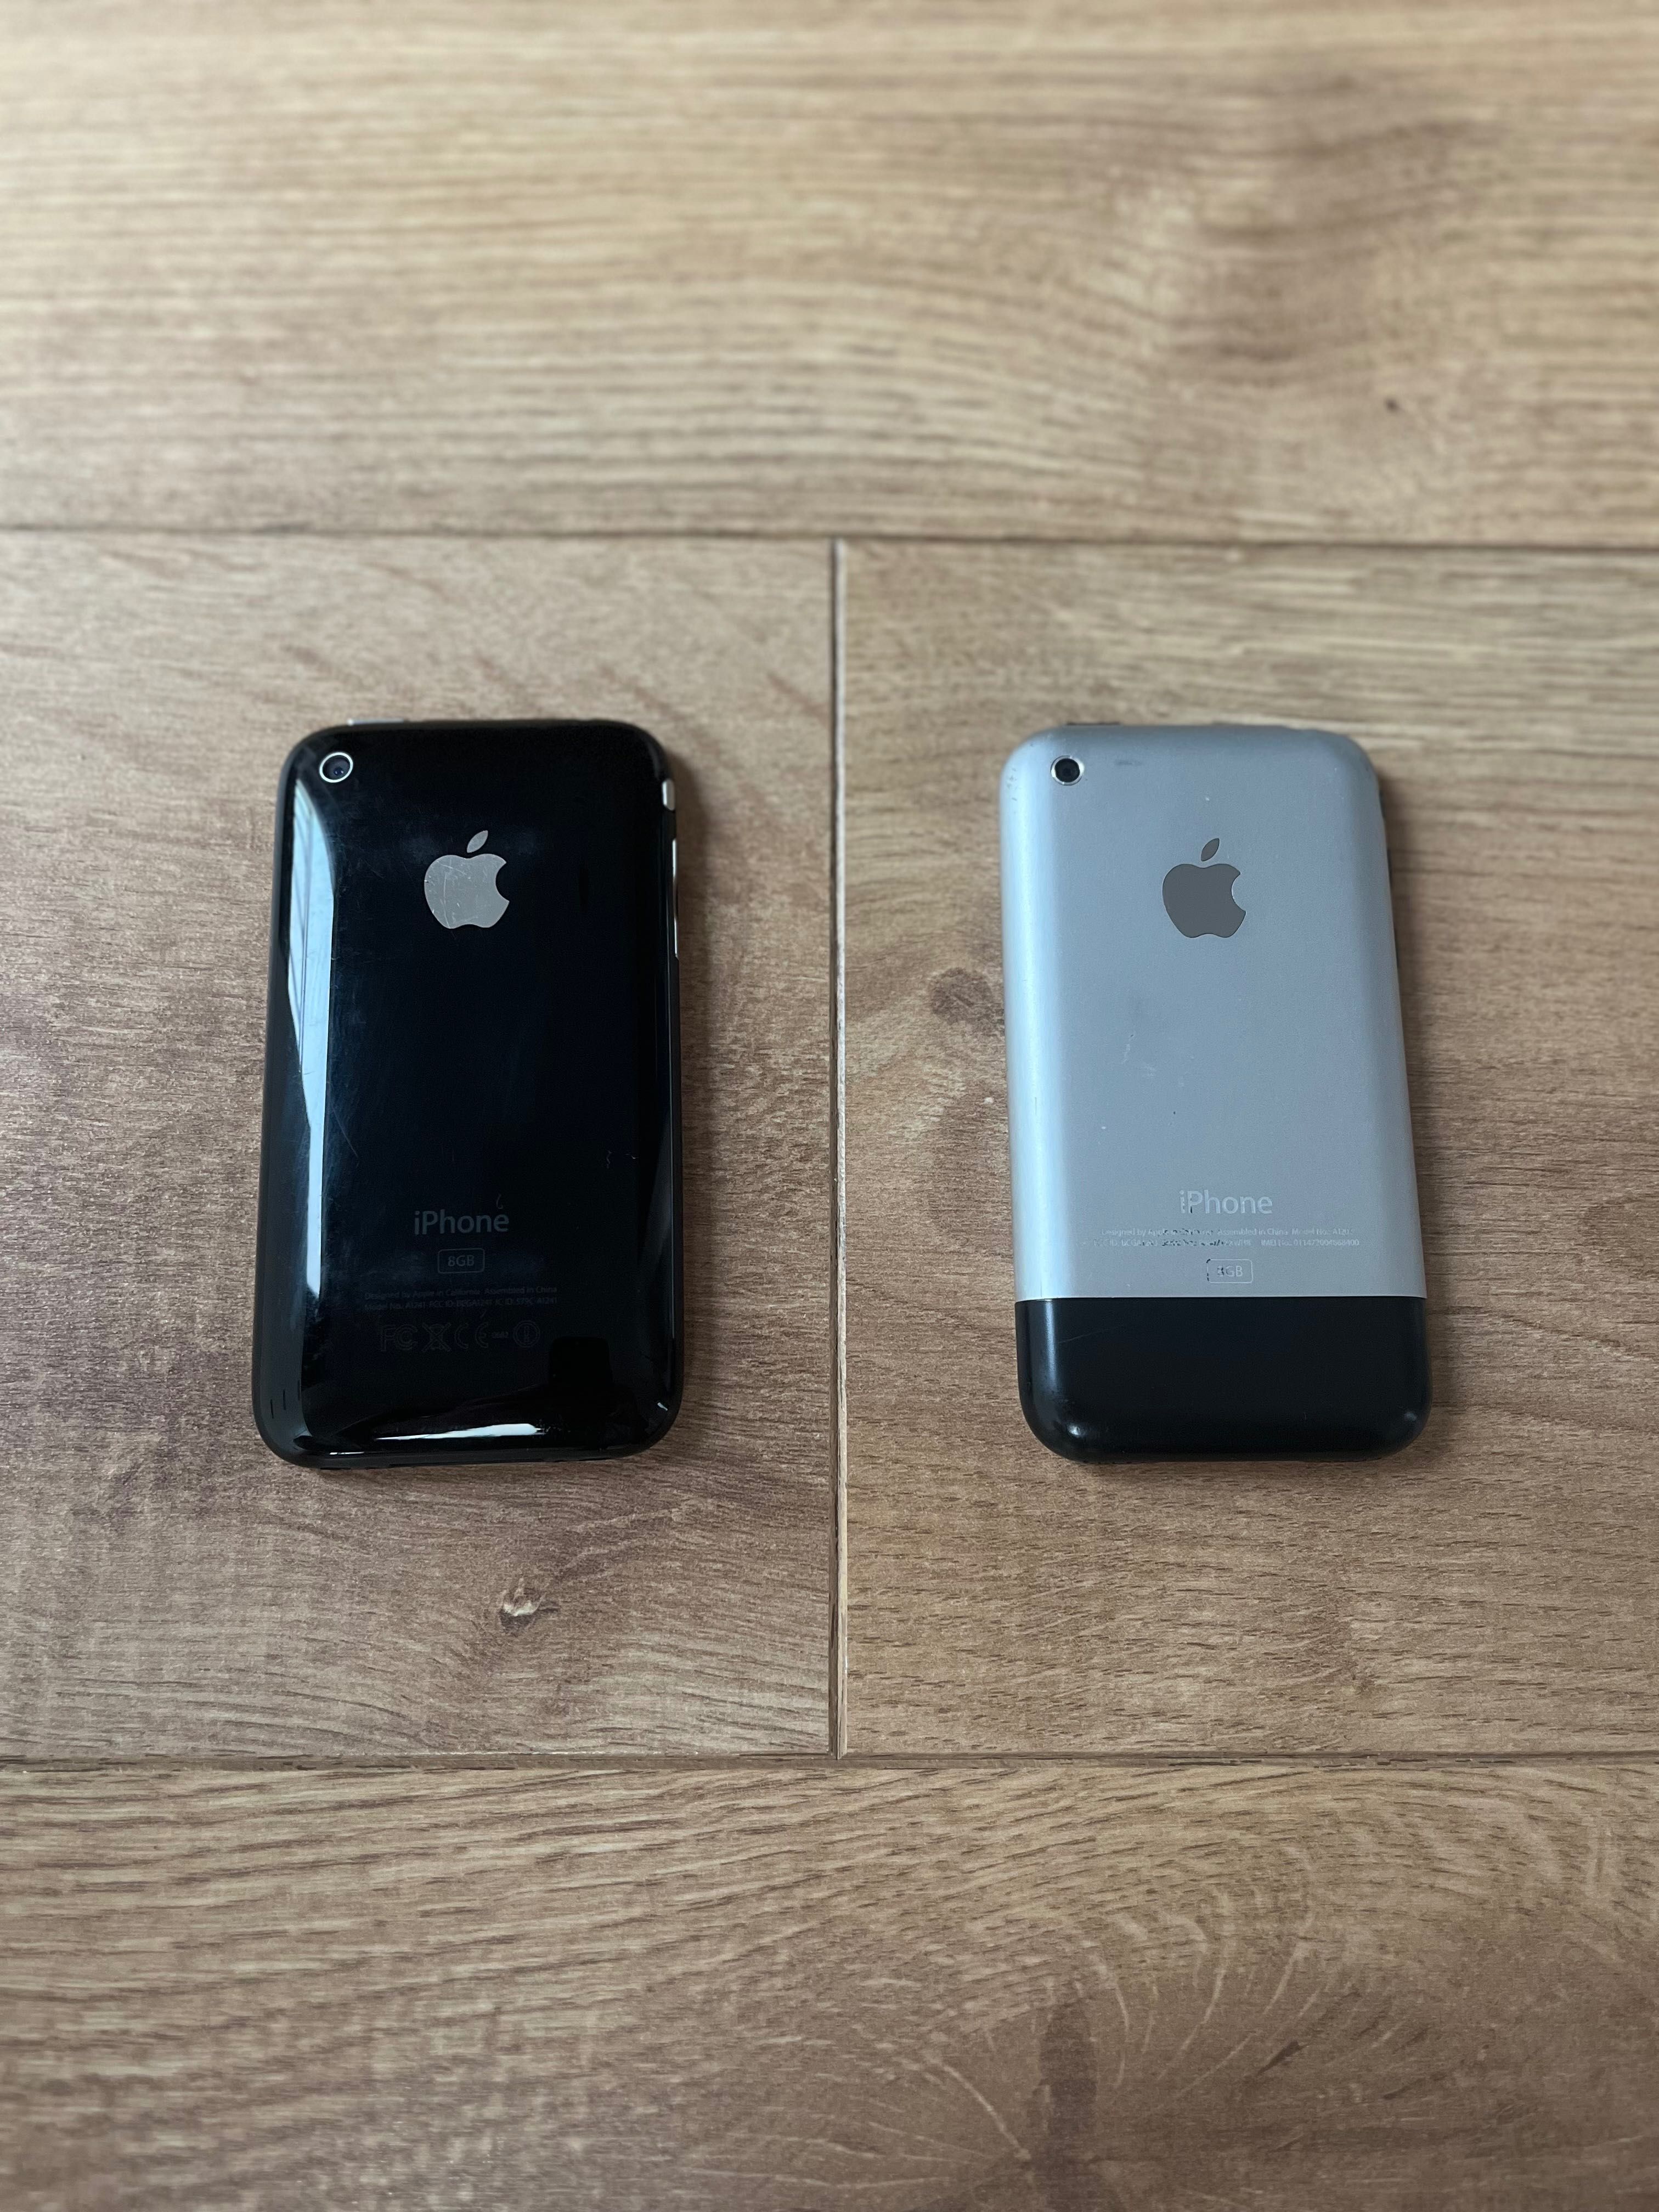 Pachet iPhone 2G + iPhone 3G originale impecabile